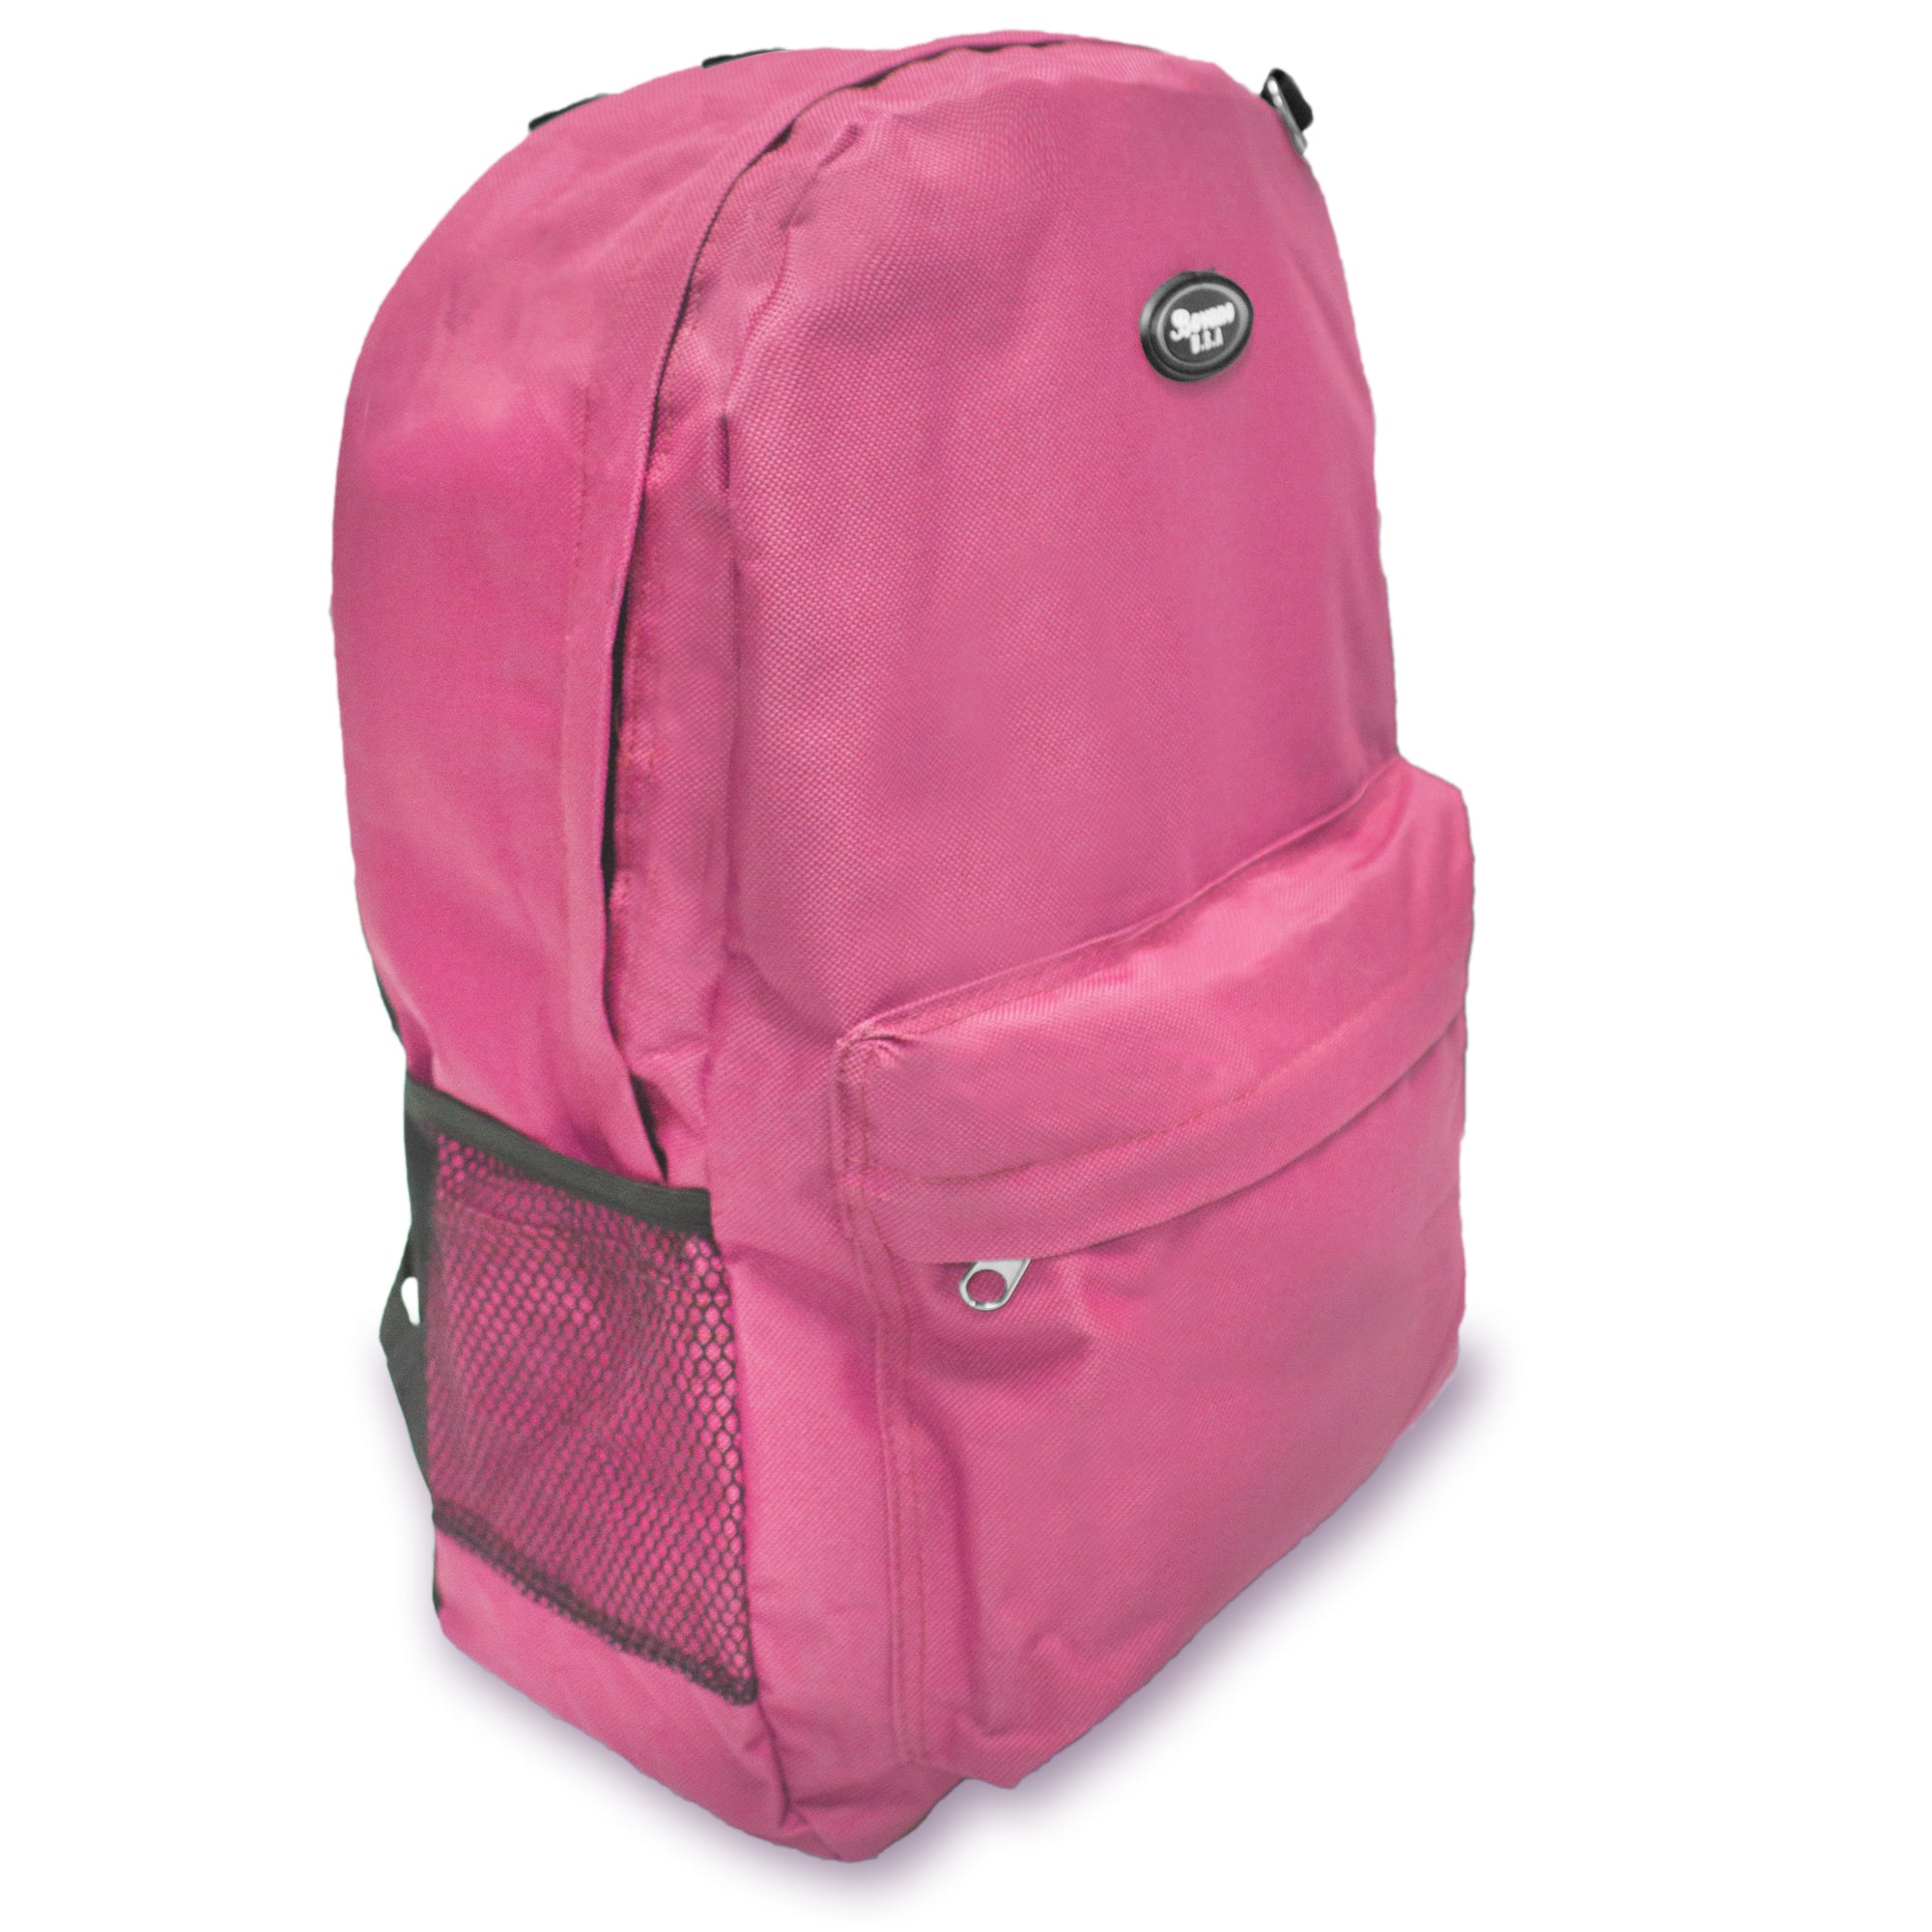 Discreet Backpacks Perfect for Emergency 72-Hour Kits — Emergency Zone